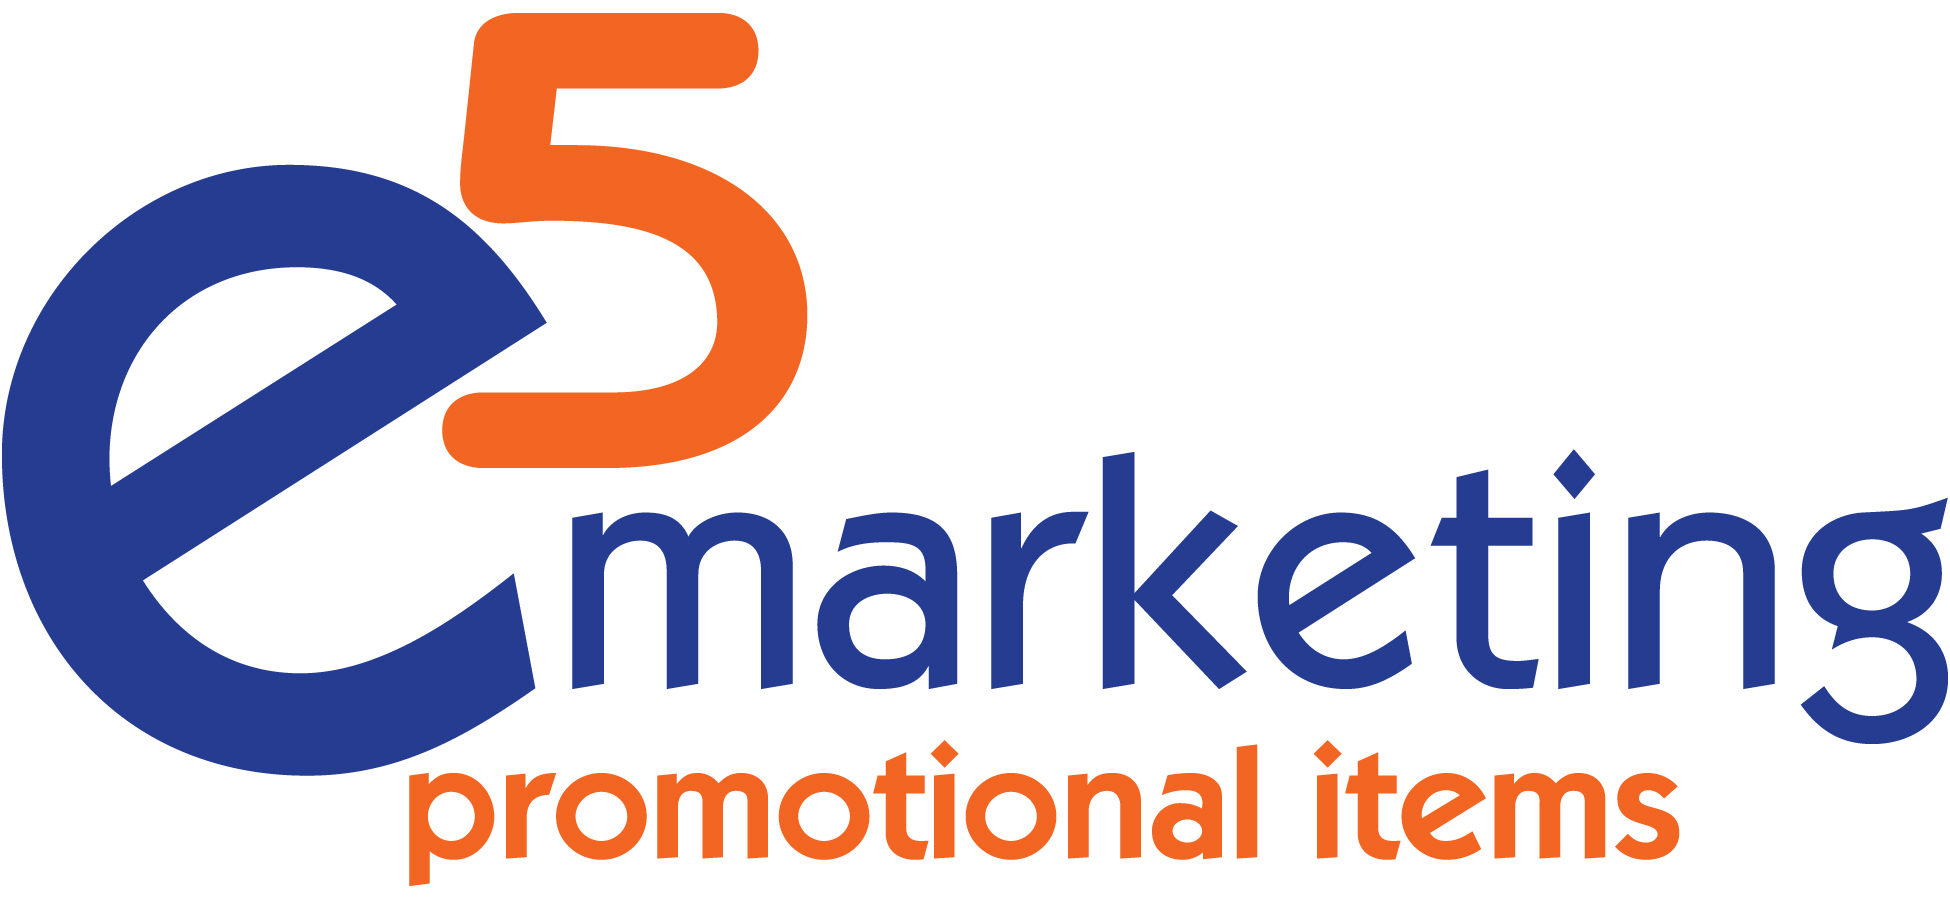 e5 Marketing, Inc.'s Logo